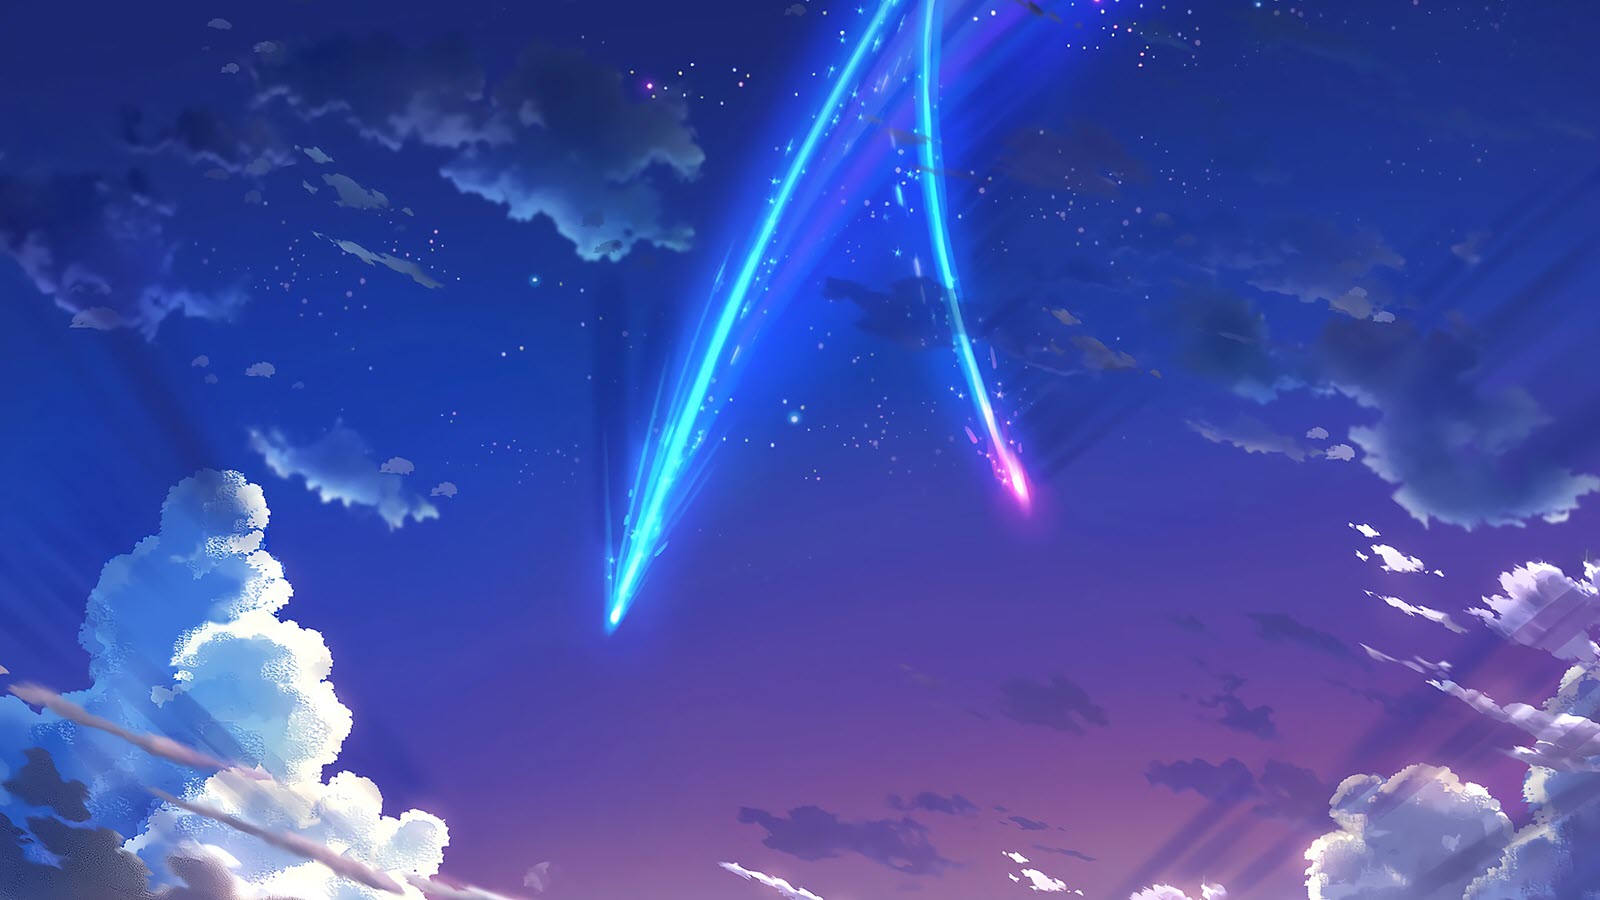 Hình ảnh anime galaxy huyền ảo, đẹp nhất cho bạn đọc